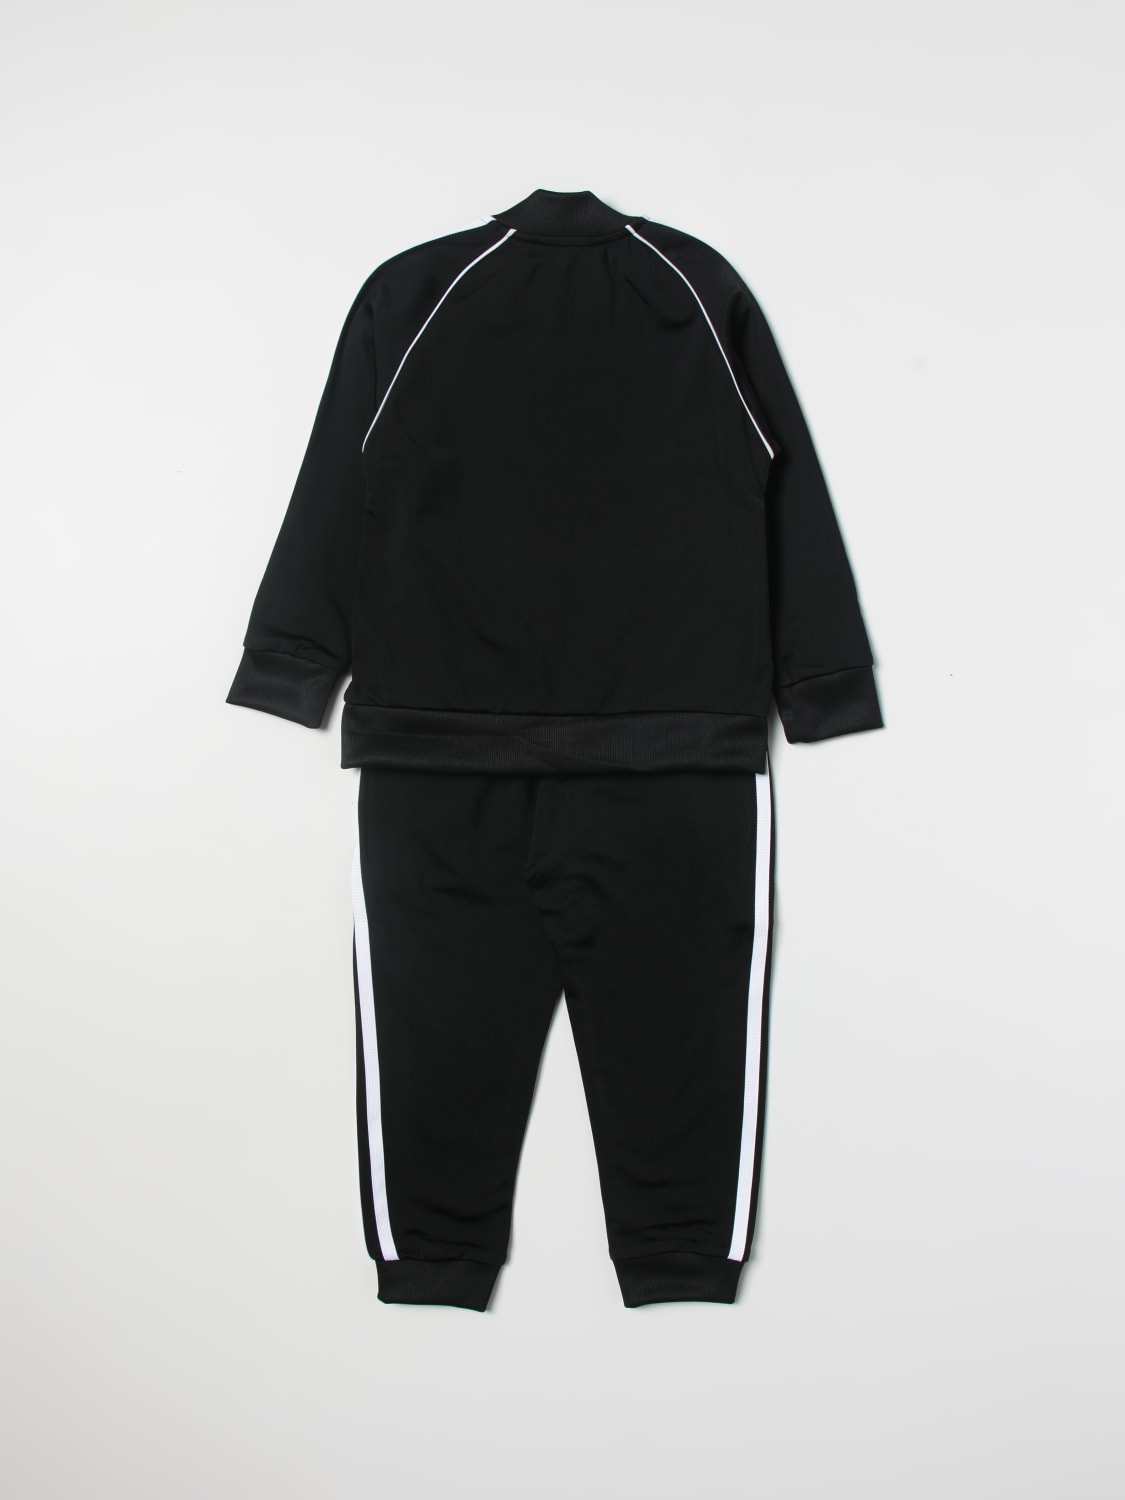 ADIDAS ORIGINALS: clothing set for boys - | Adidas Originals clothing set H25260 online at GIGLIO.COM